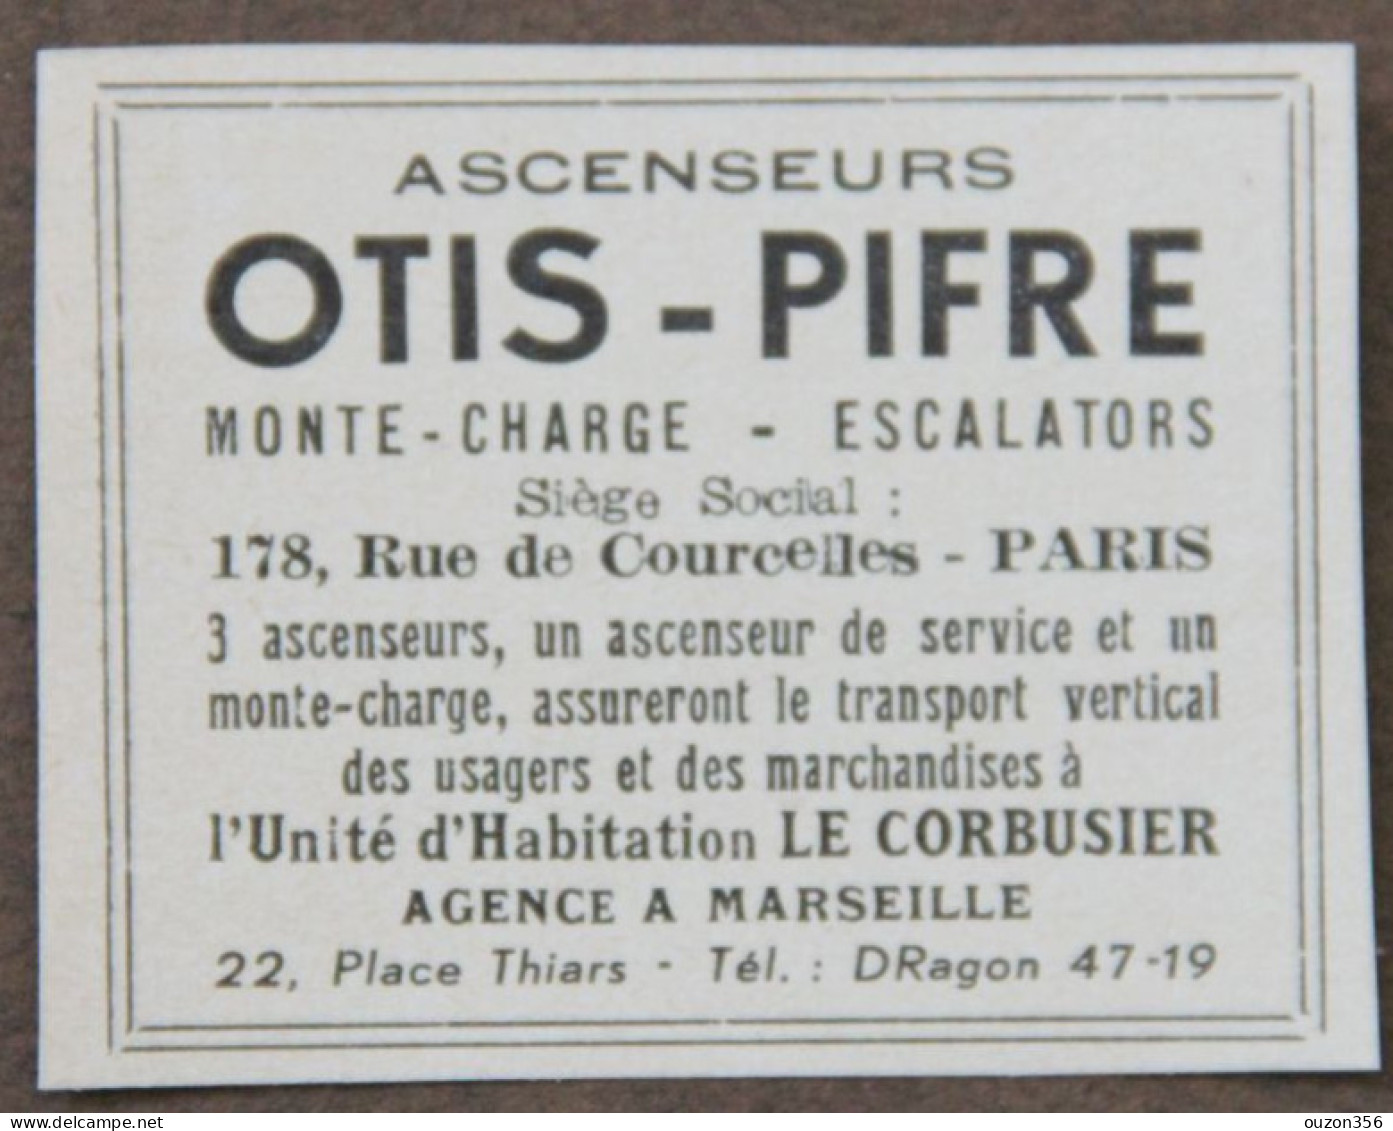 Publicité : Ascenseurs OTIS-PIFRE, Monte-charge, Escalators, Paris, Agence à Marseille, Le Corbusier, 1951 - Publicités